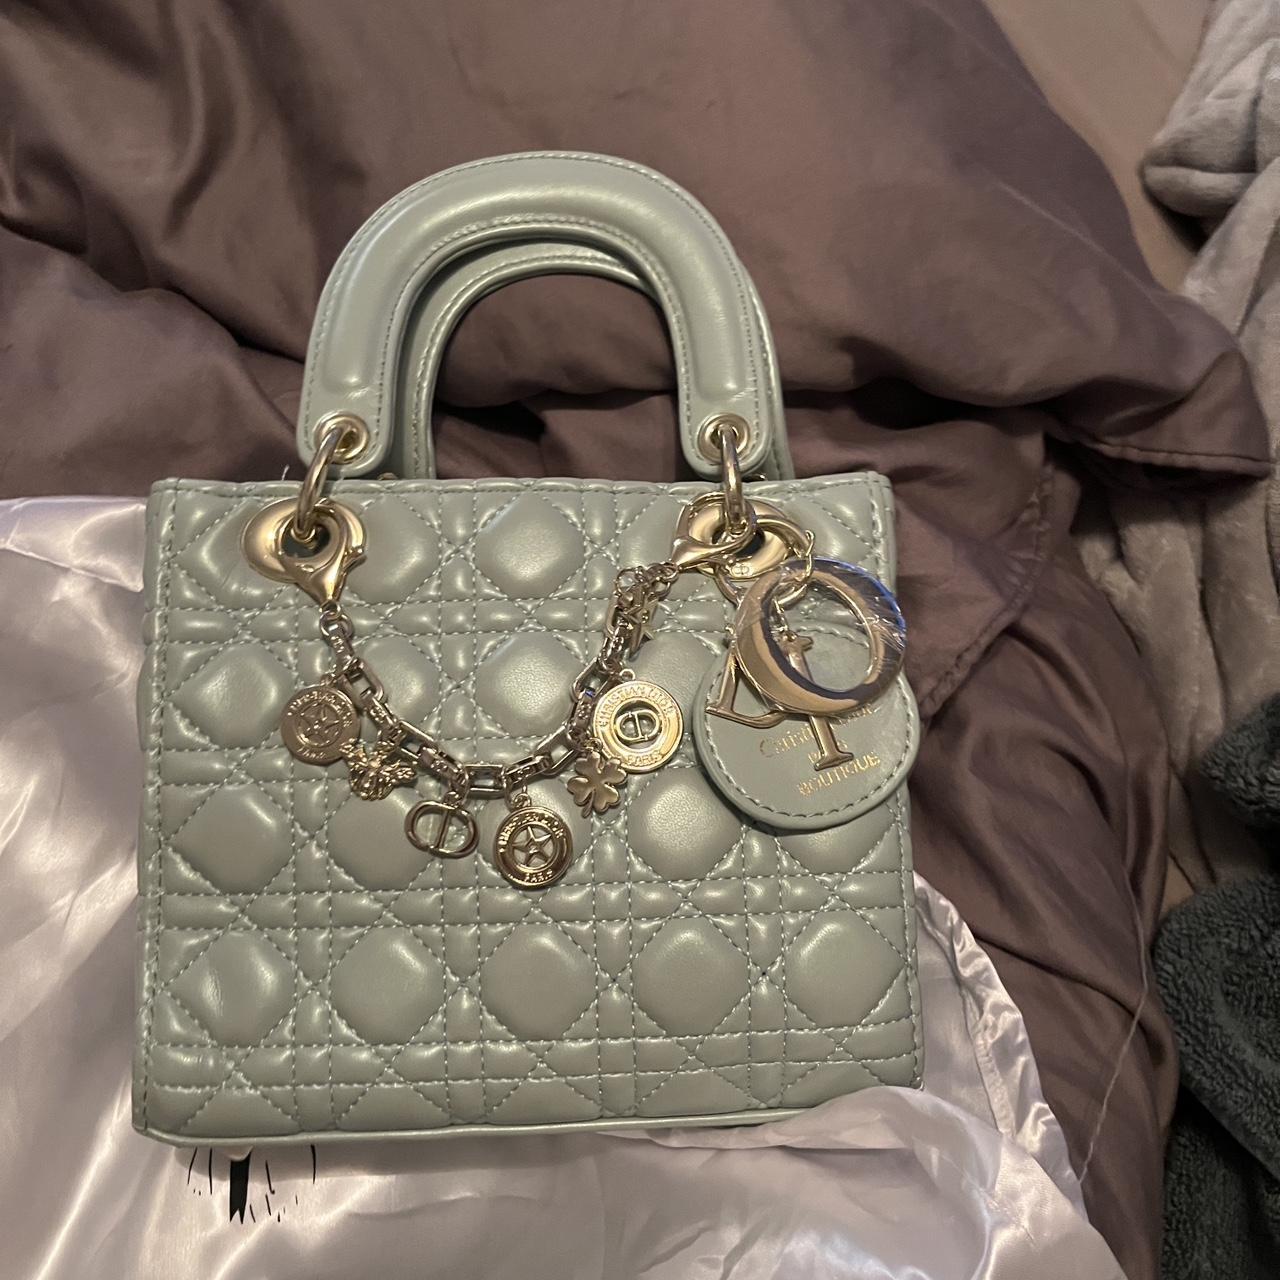 Lady Dior fashion bag - Depop